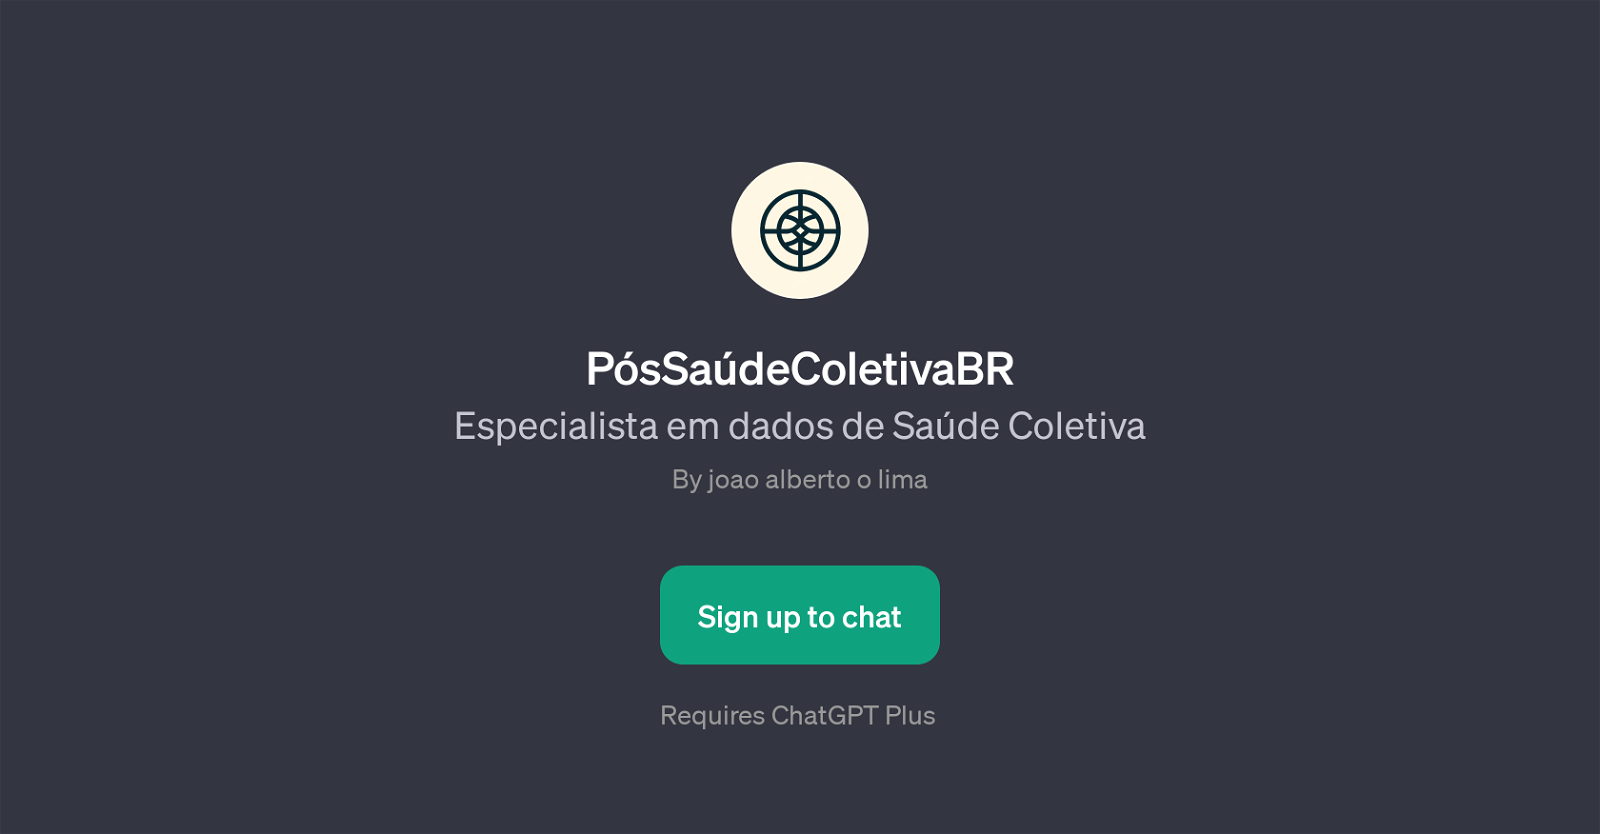 PsSadeColetivaBR website